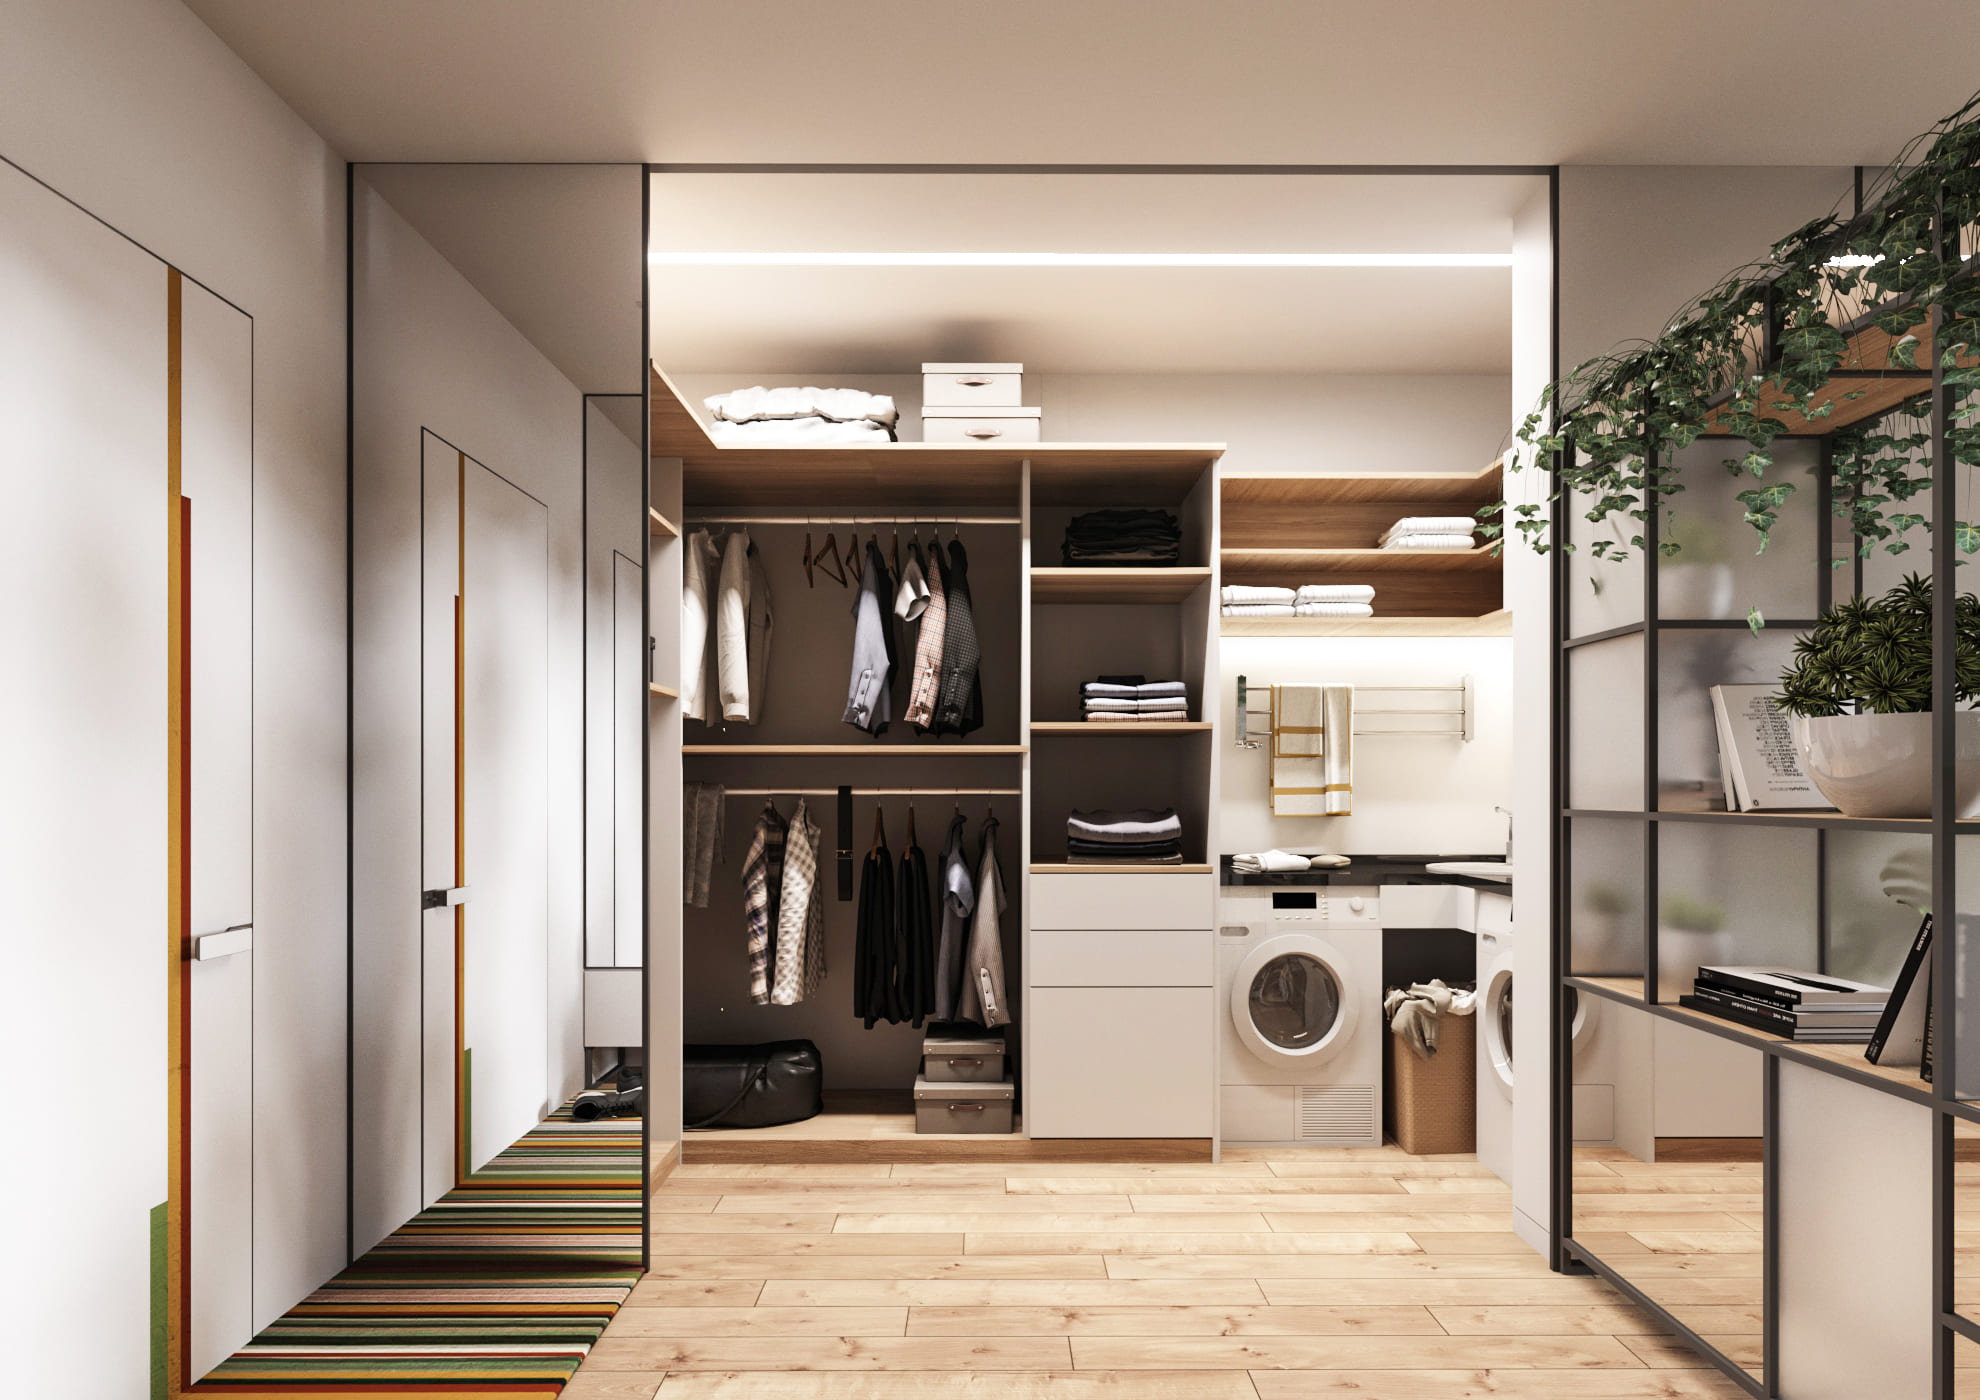 Современный дизайн интерьера квартиры в Харькове | Intuition Design